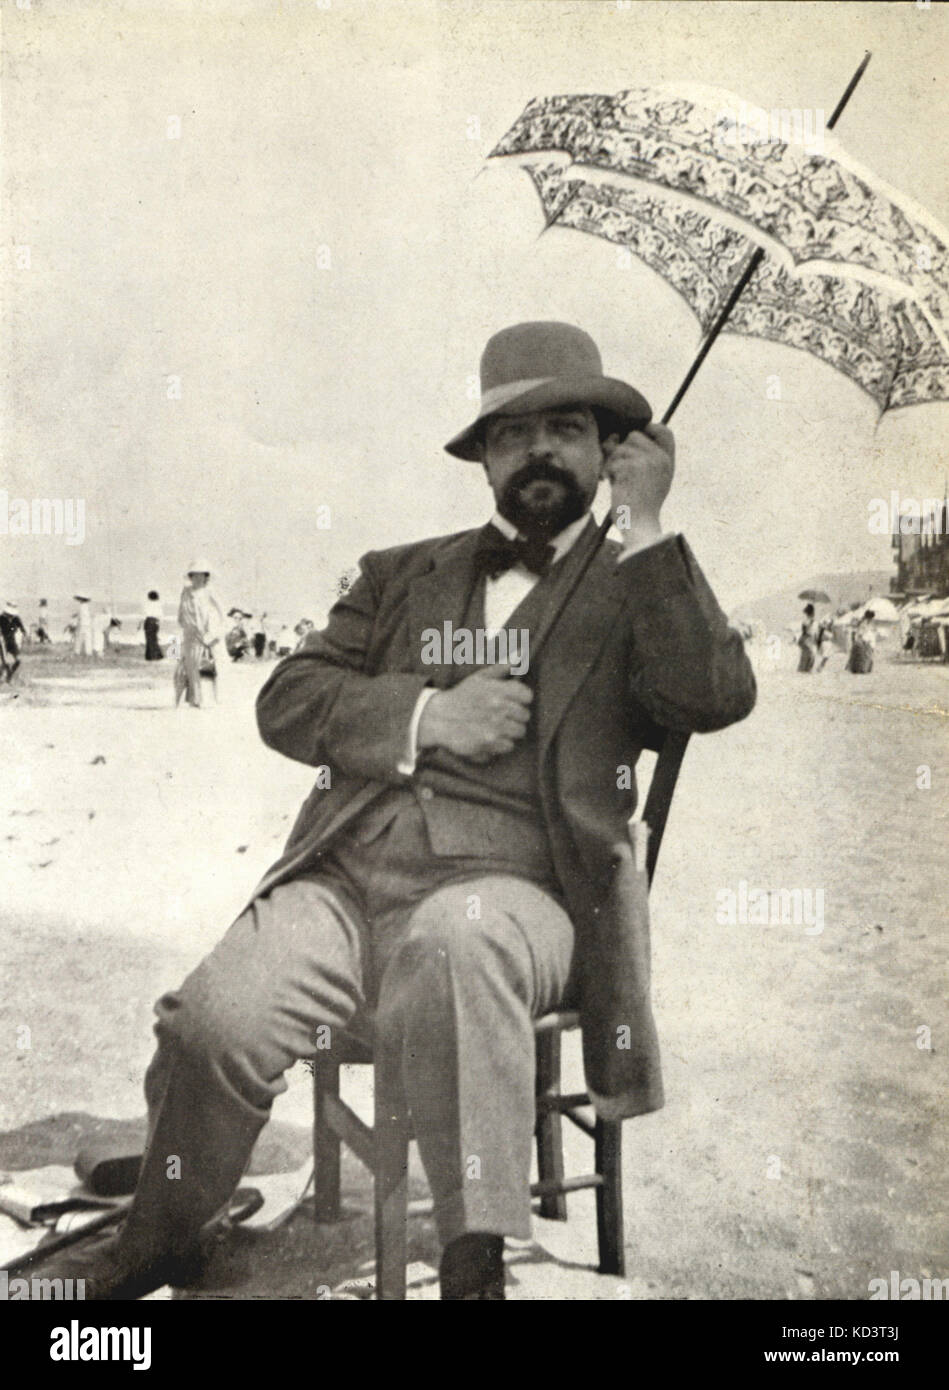 DEBUSSY, CLAUDE - nel 1911 - sulla spiaggia di Houlgate con parasole. Il compositore francese (1862-1918) Foto Stock